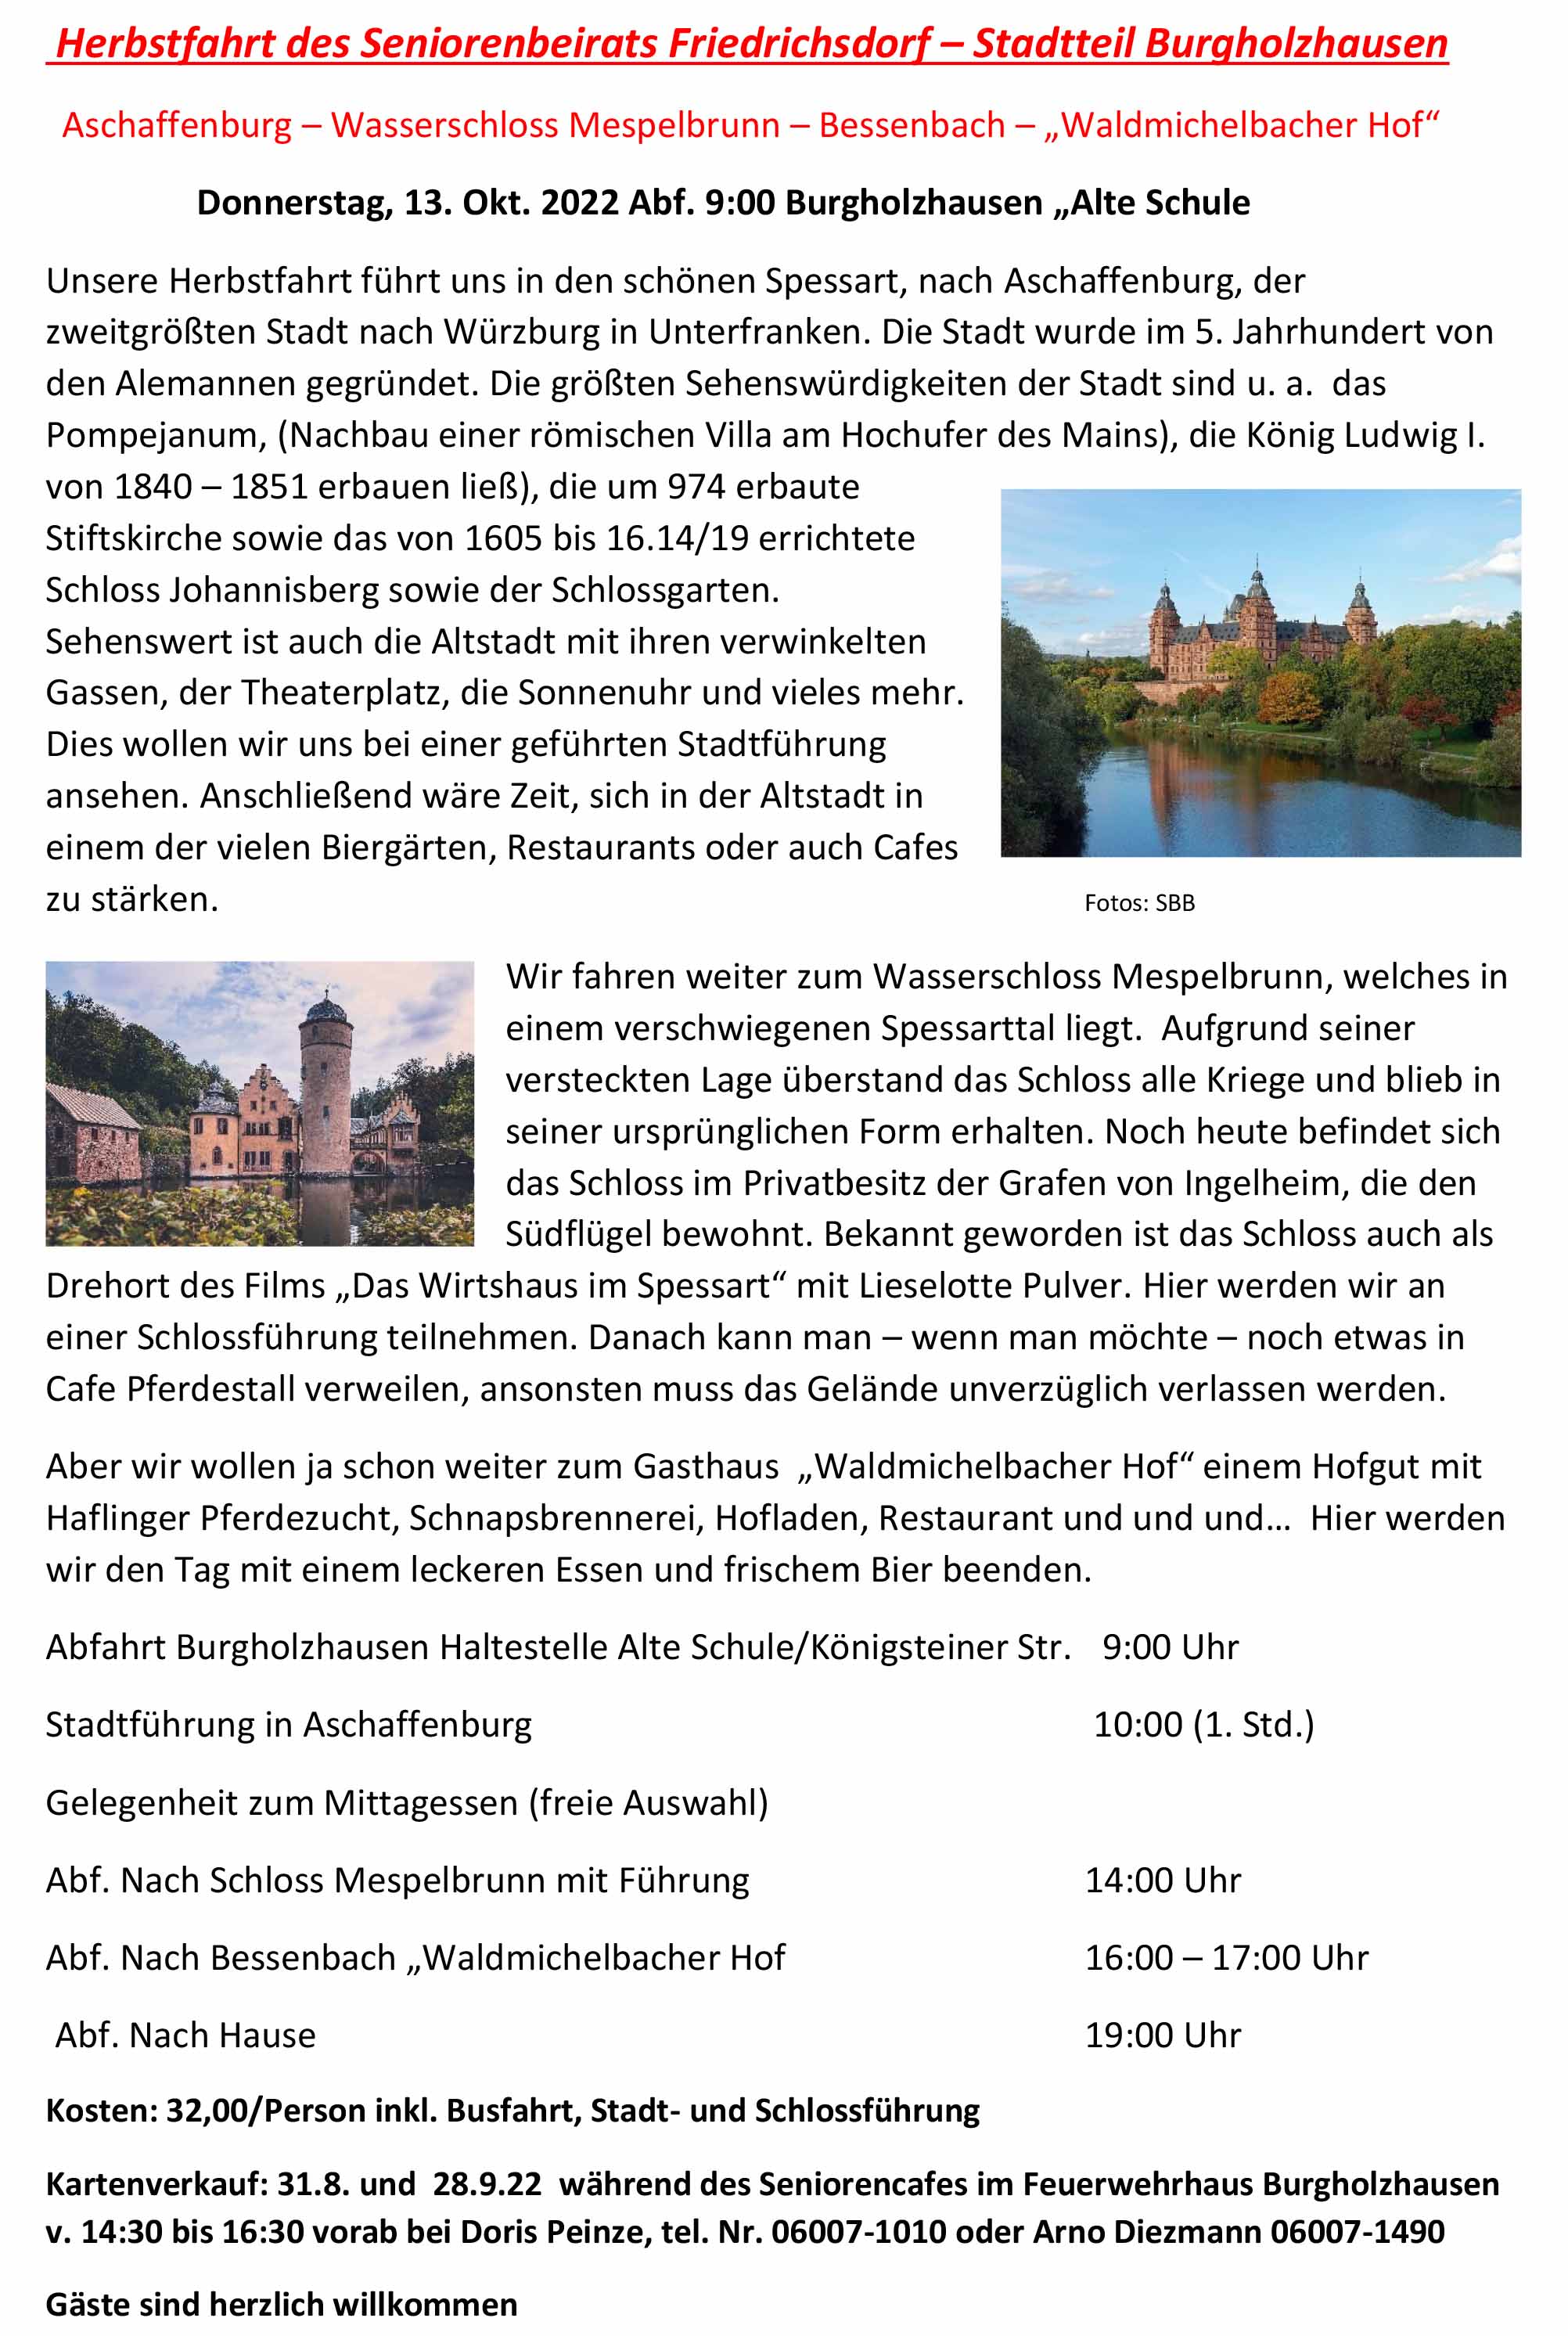 Burgholzhausen Aschaffenburg 13 10 22